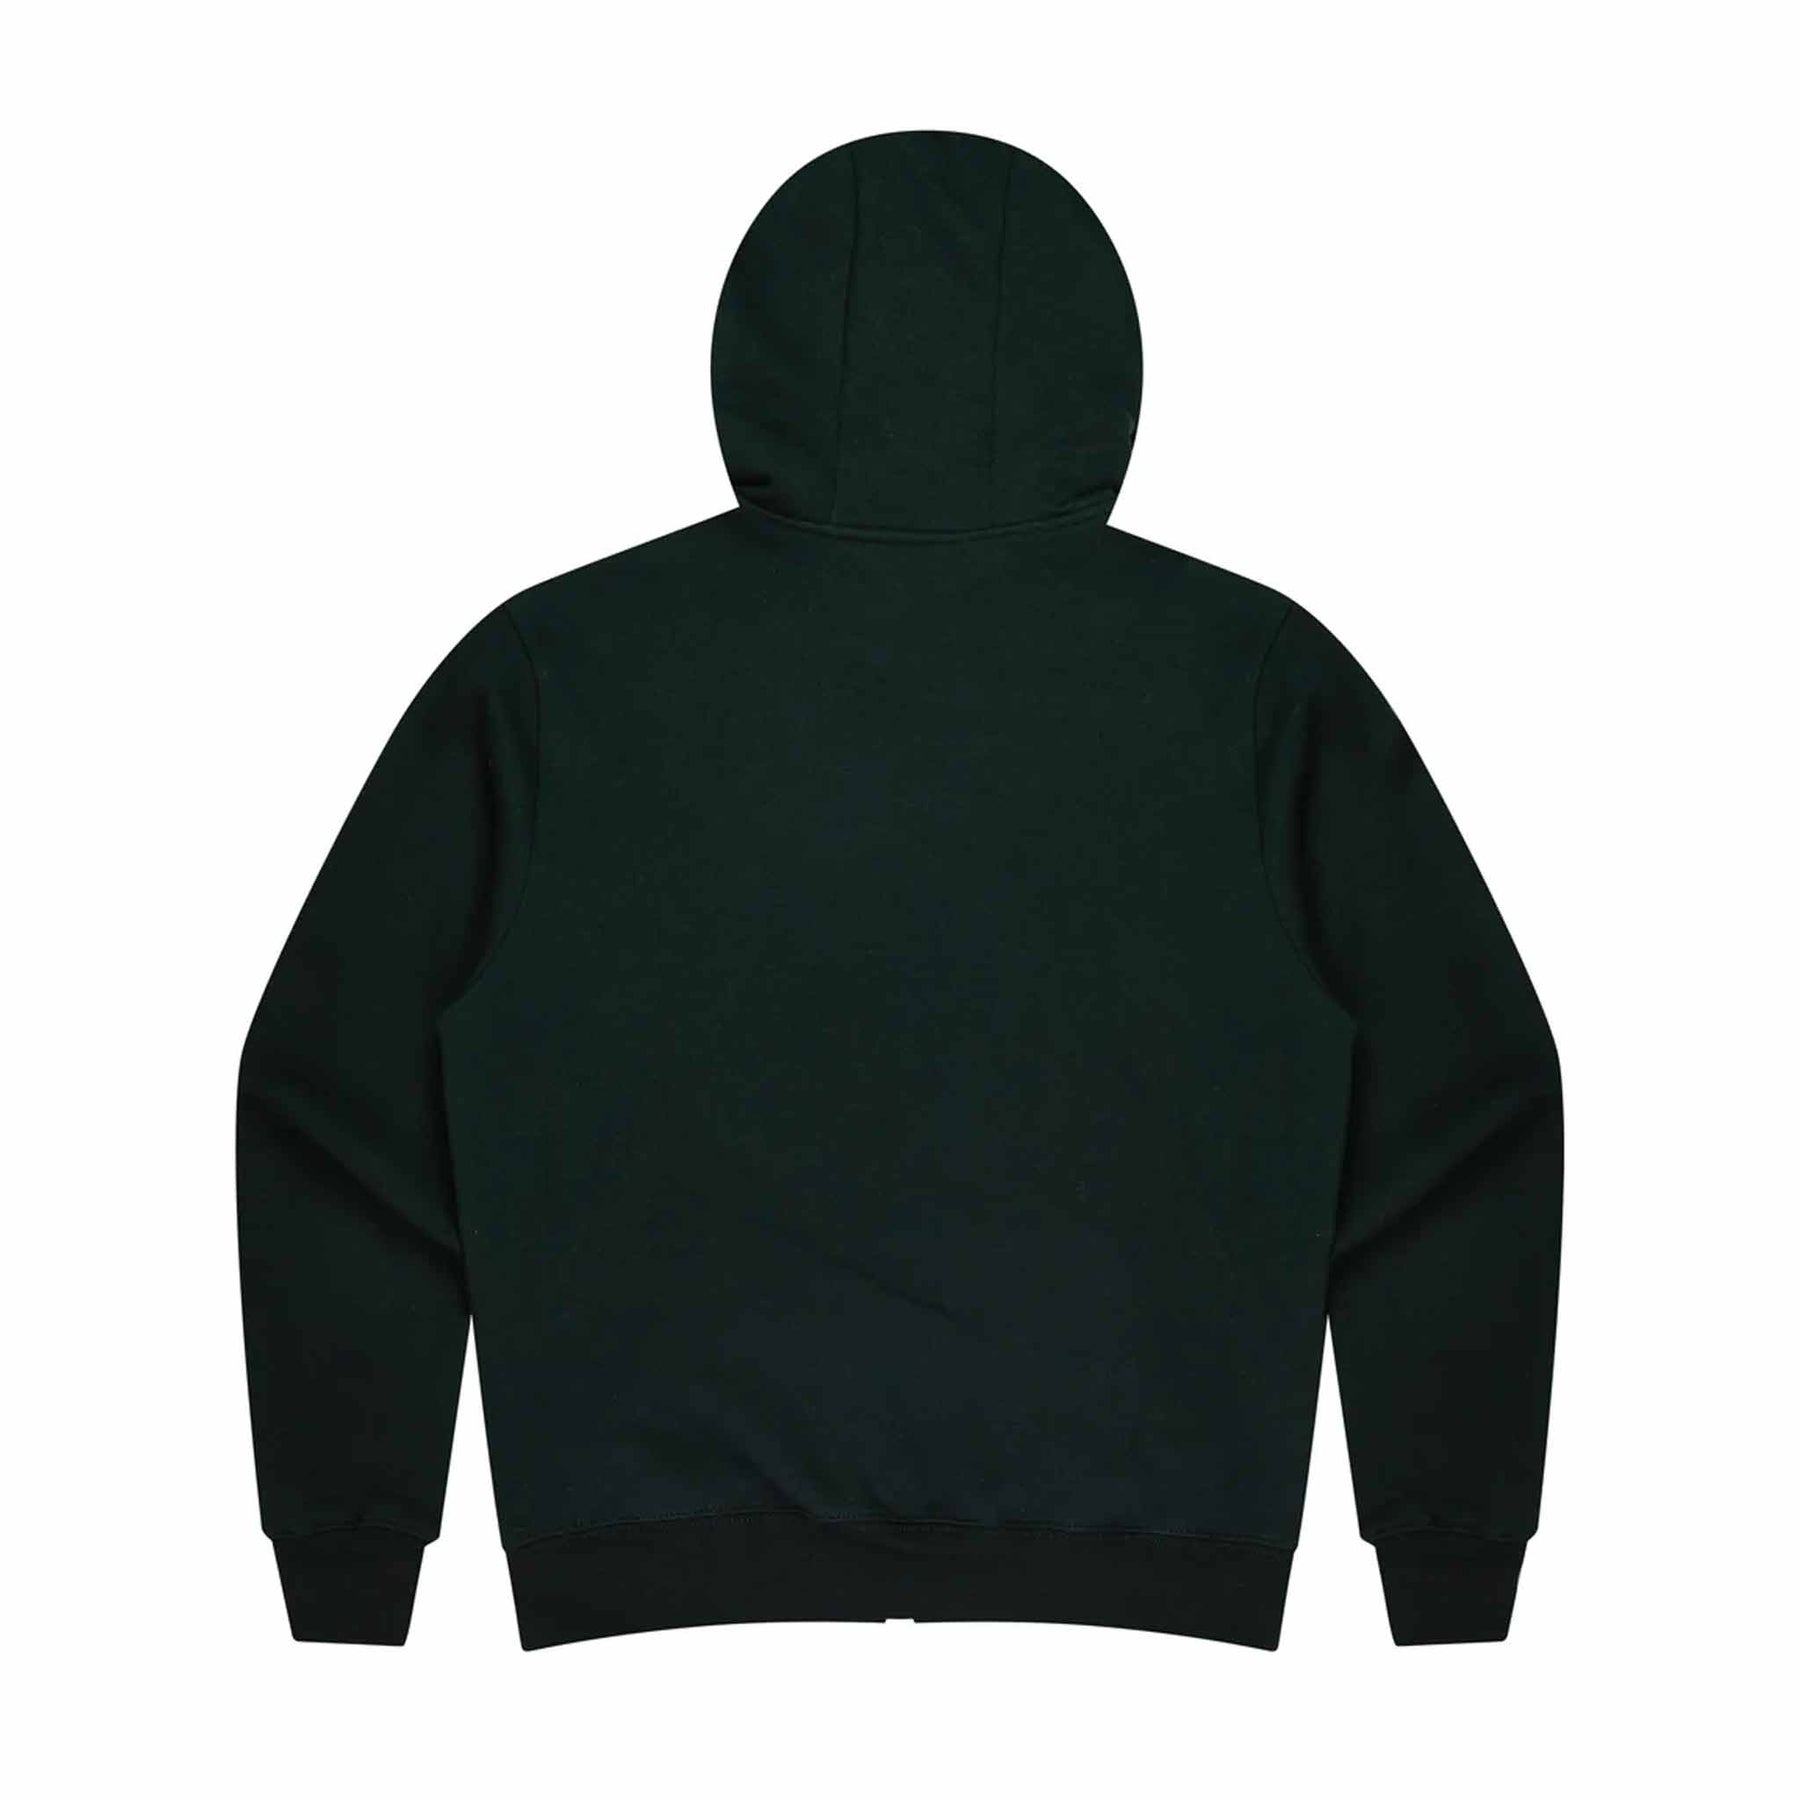 aussie pacific queenscliff zip kids hoodie in black